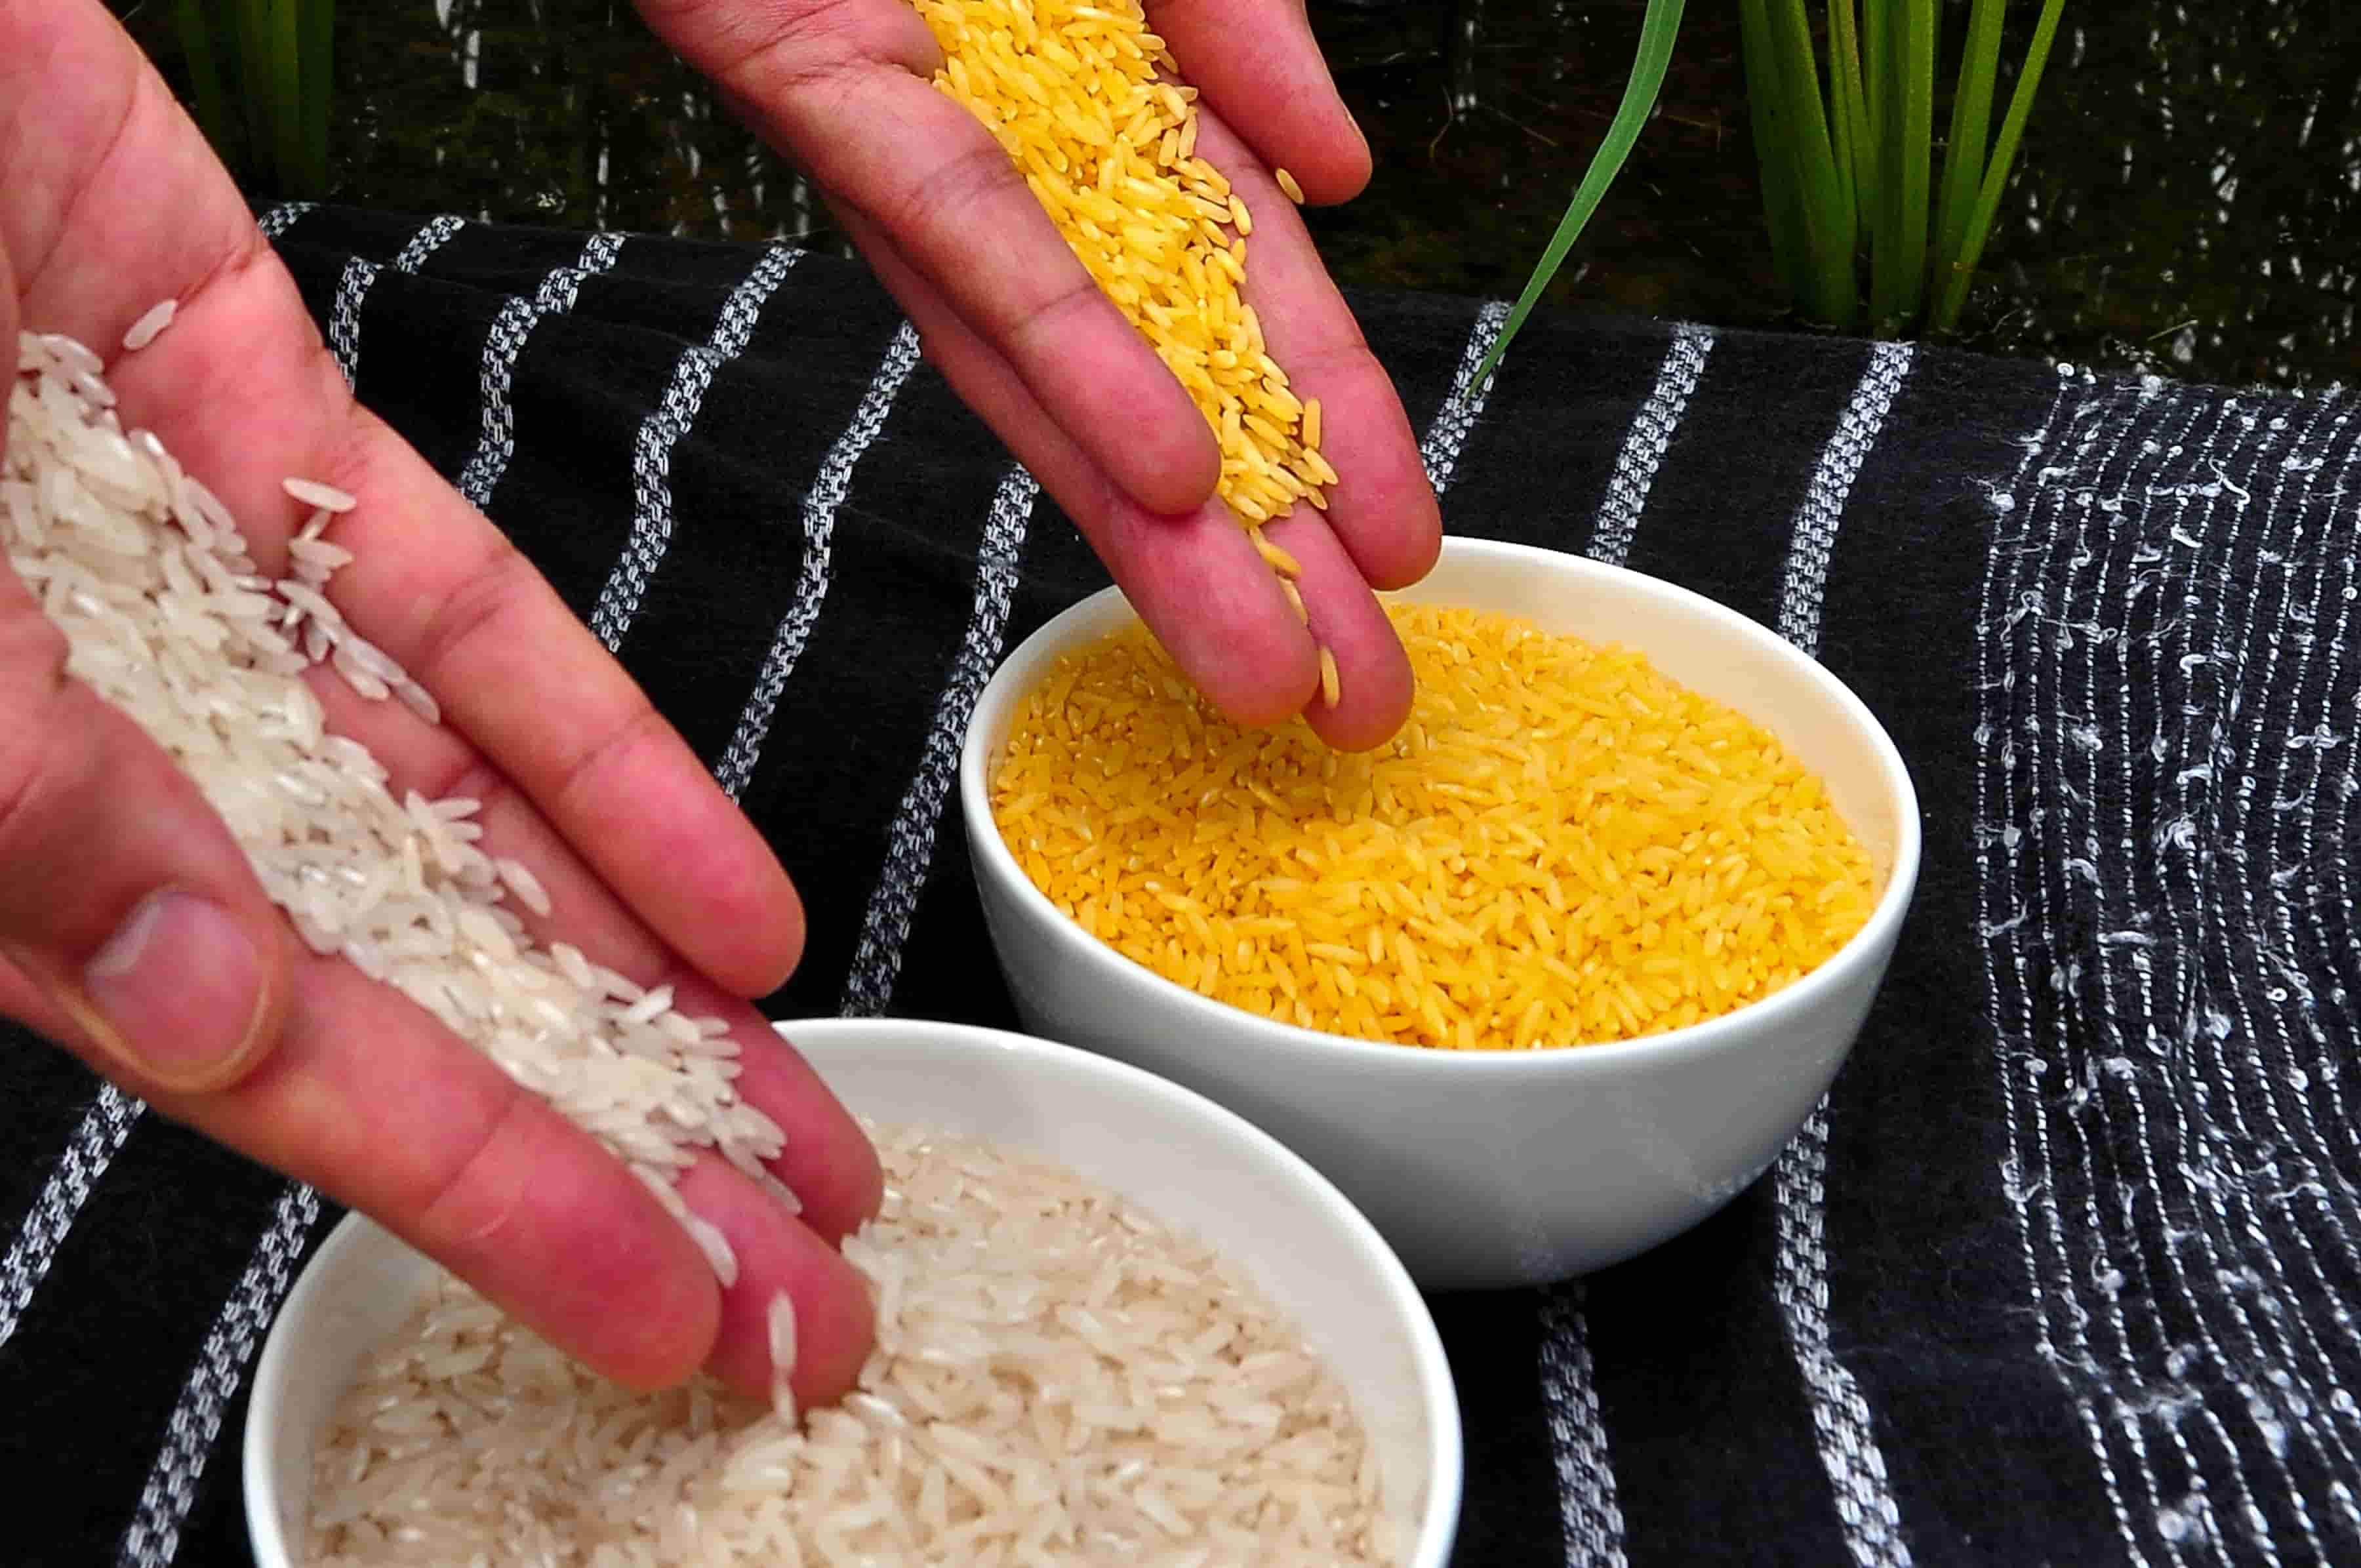  تفاوت برنج طلایی با برنج معمولی